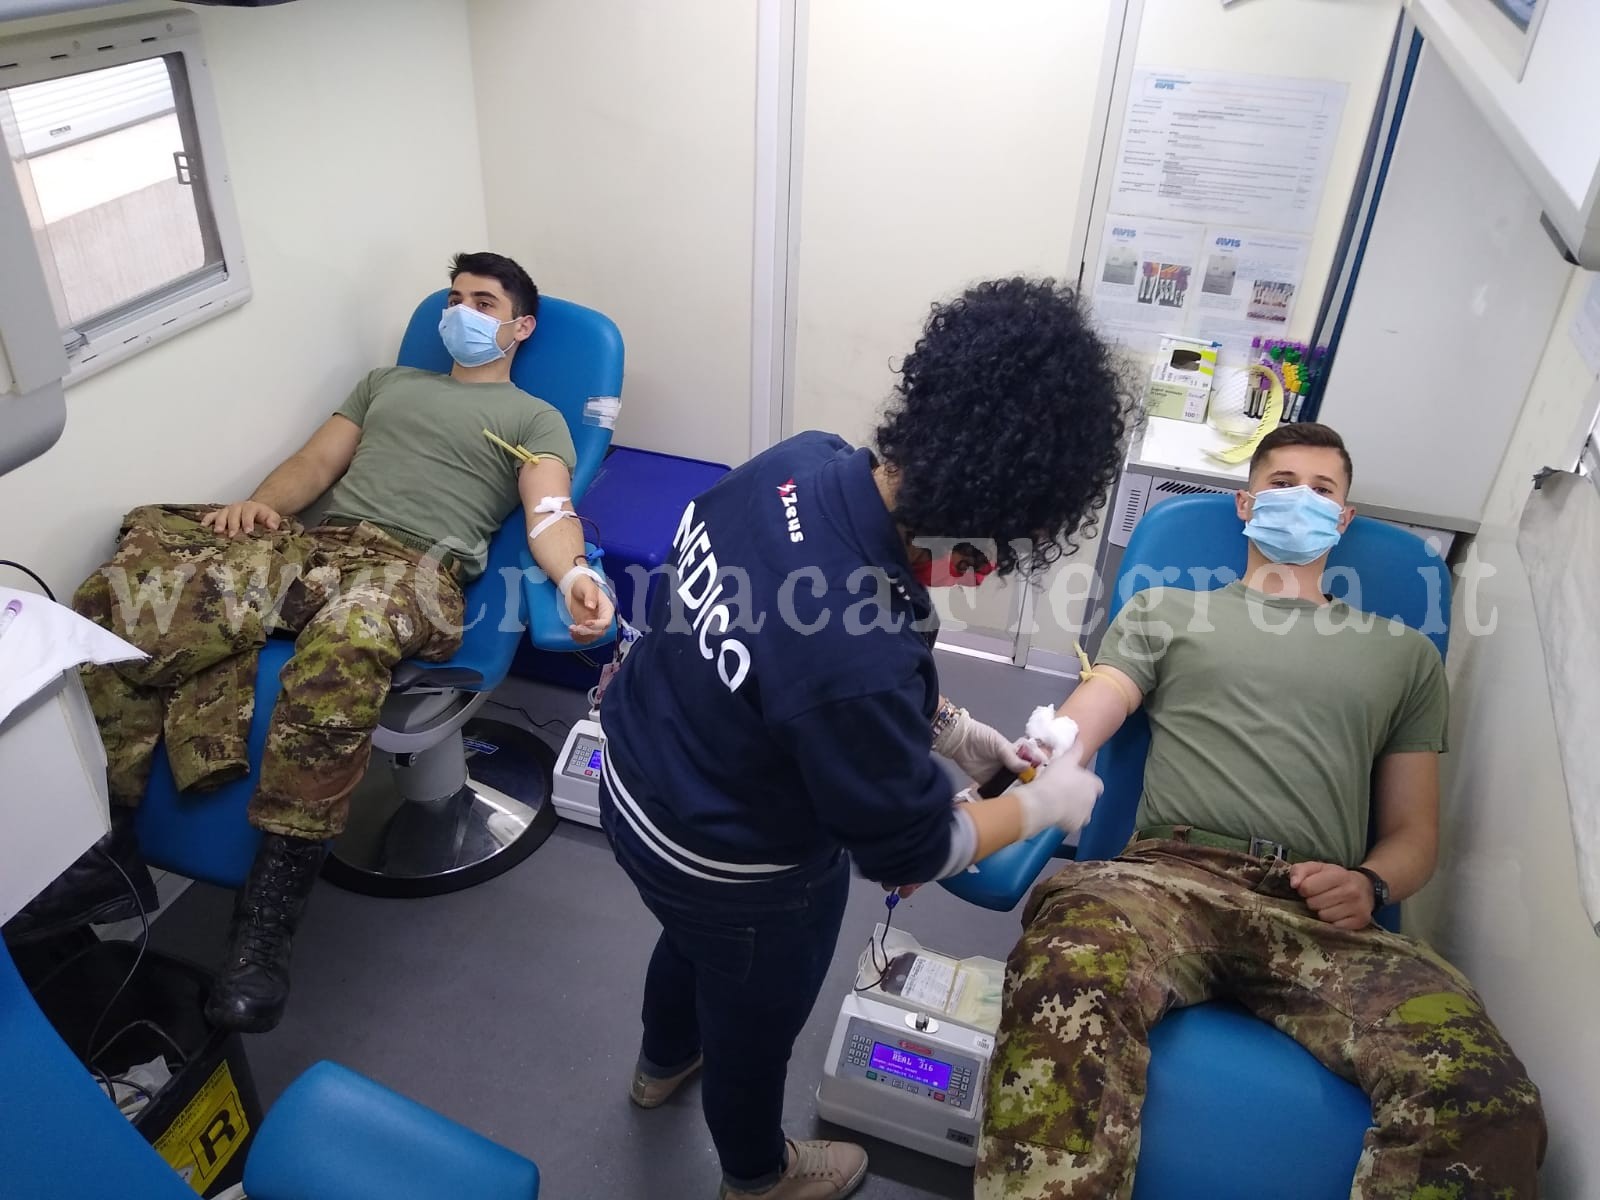 Raccolta sangue a Pozzuoli: bersaglieri dell’esercito donano per gli ospedali